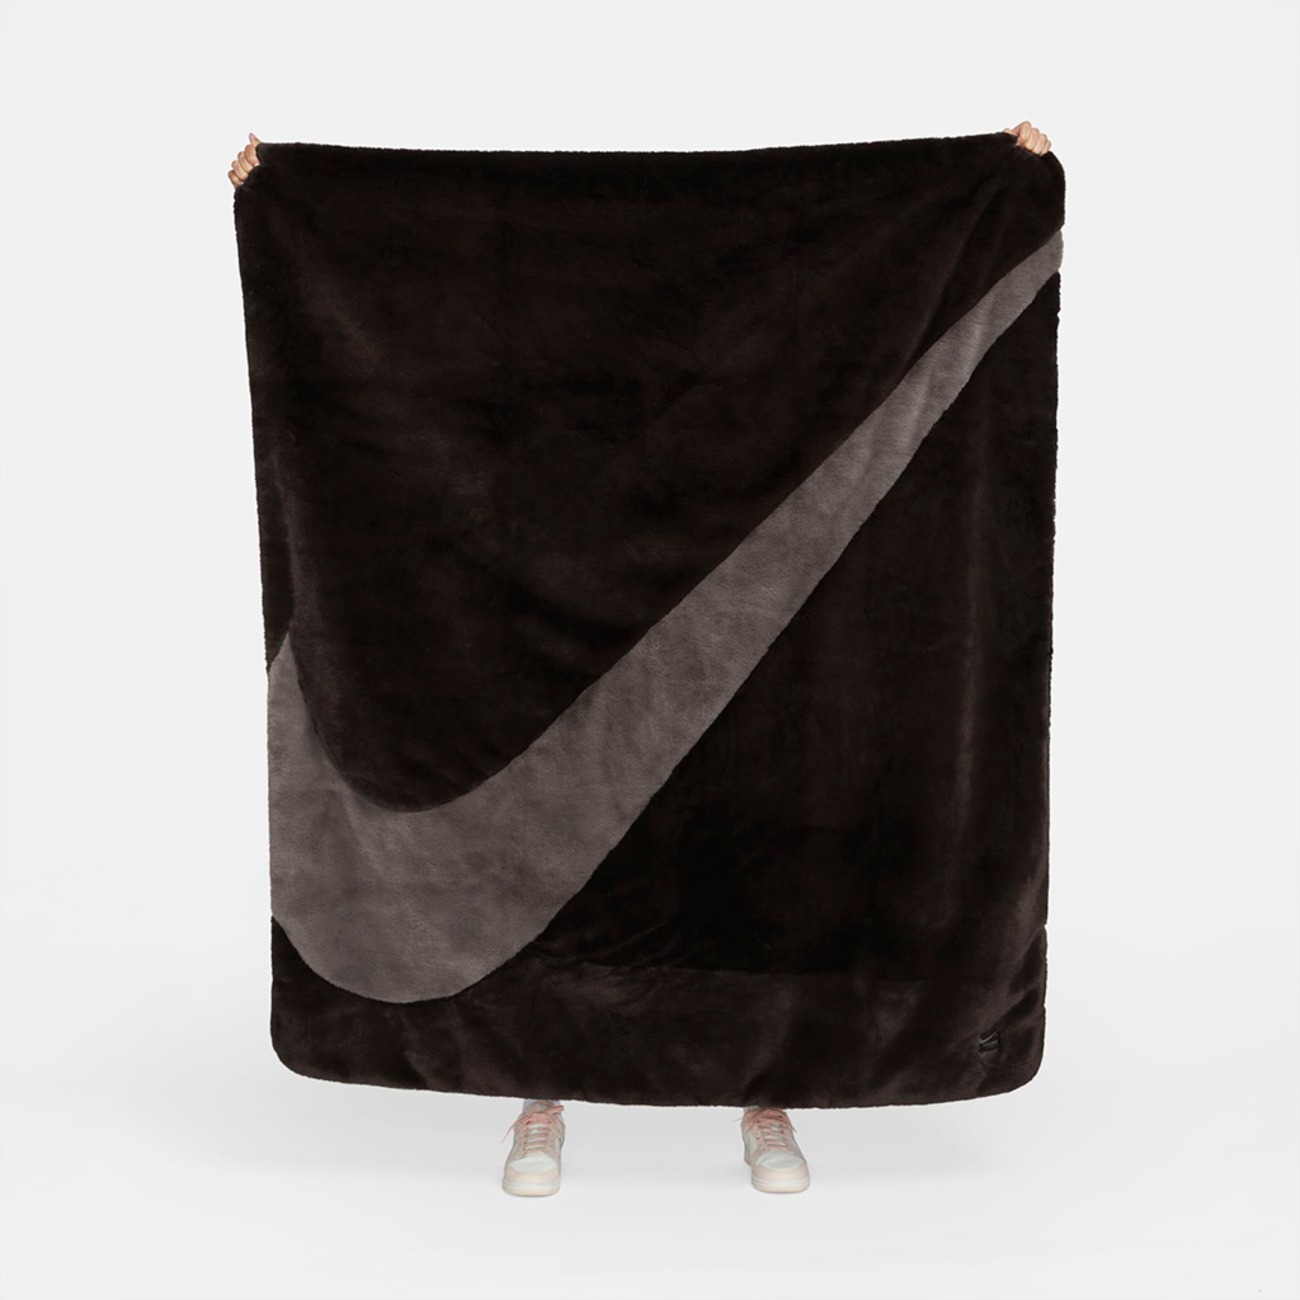 Cobertor Nike Sportswear Feminino - Foto 11